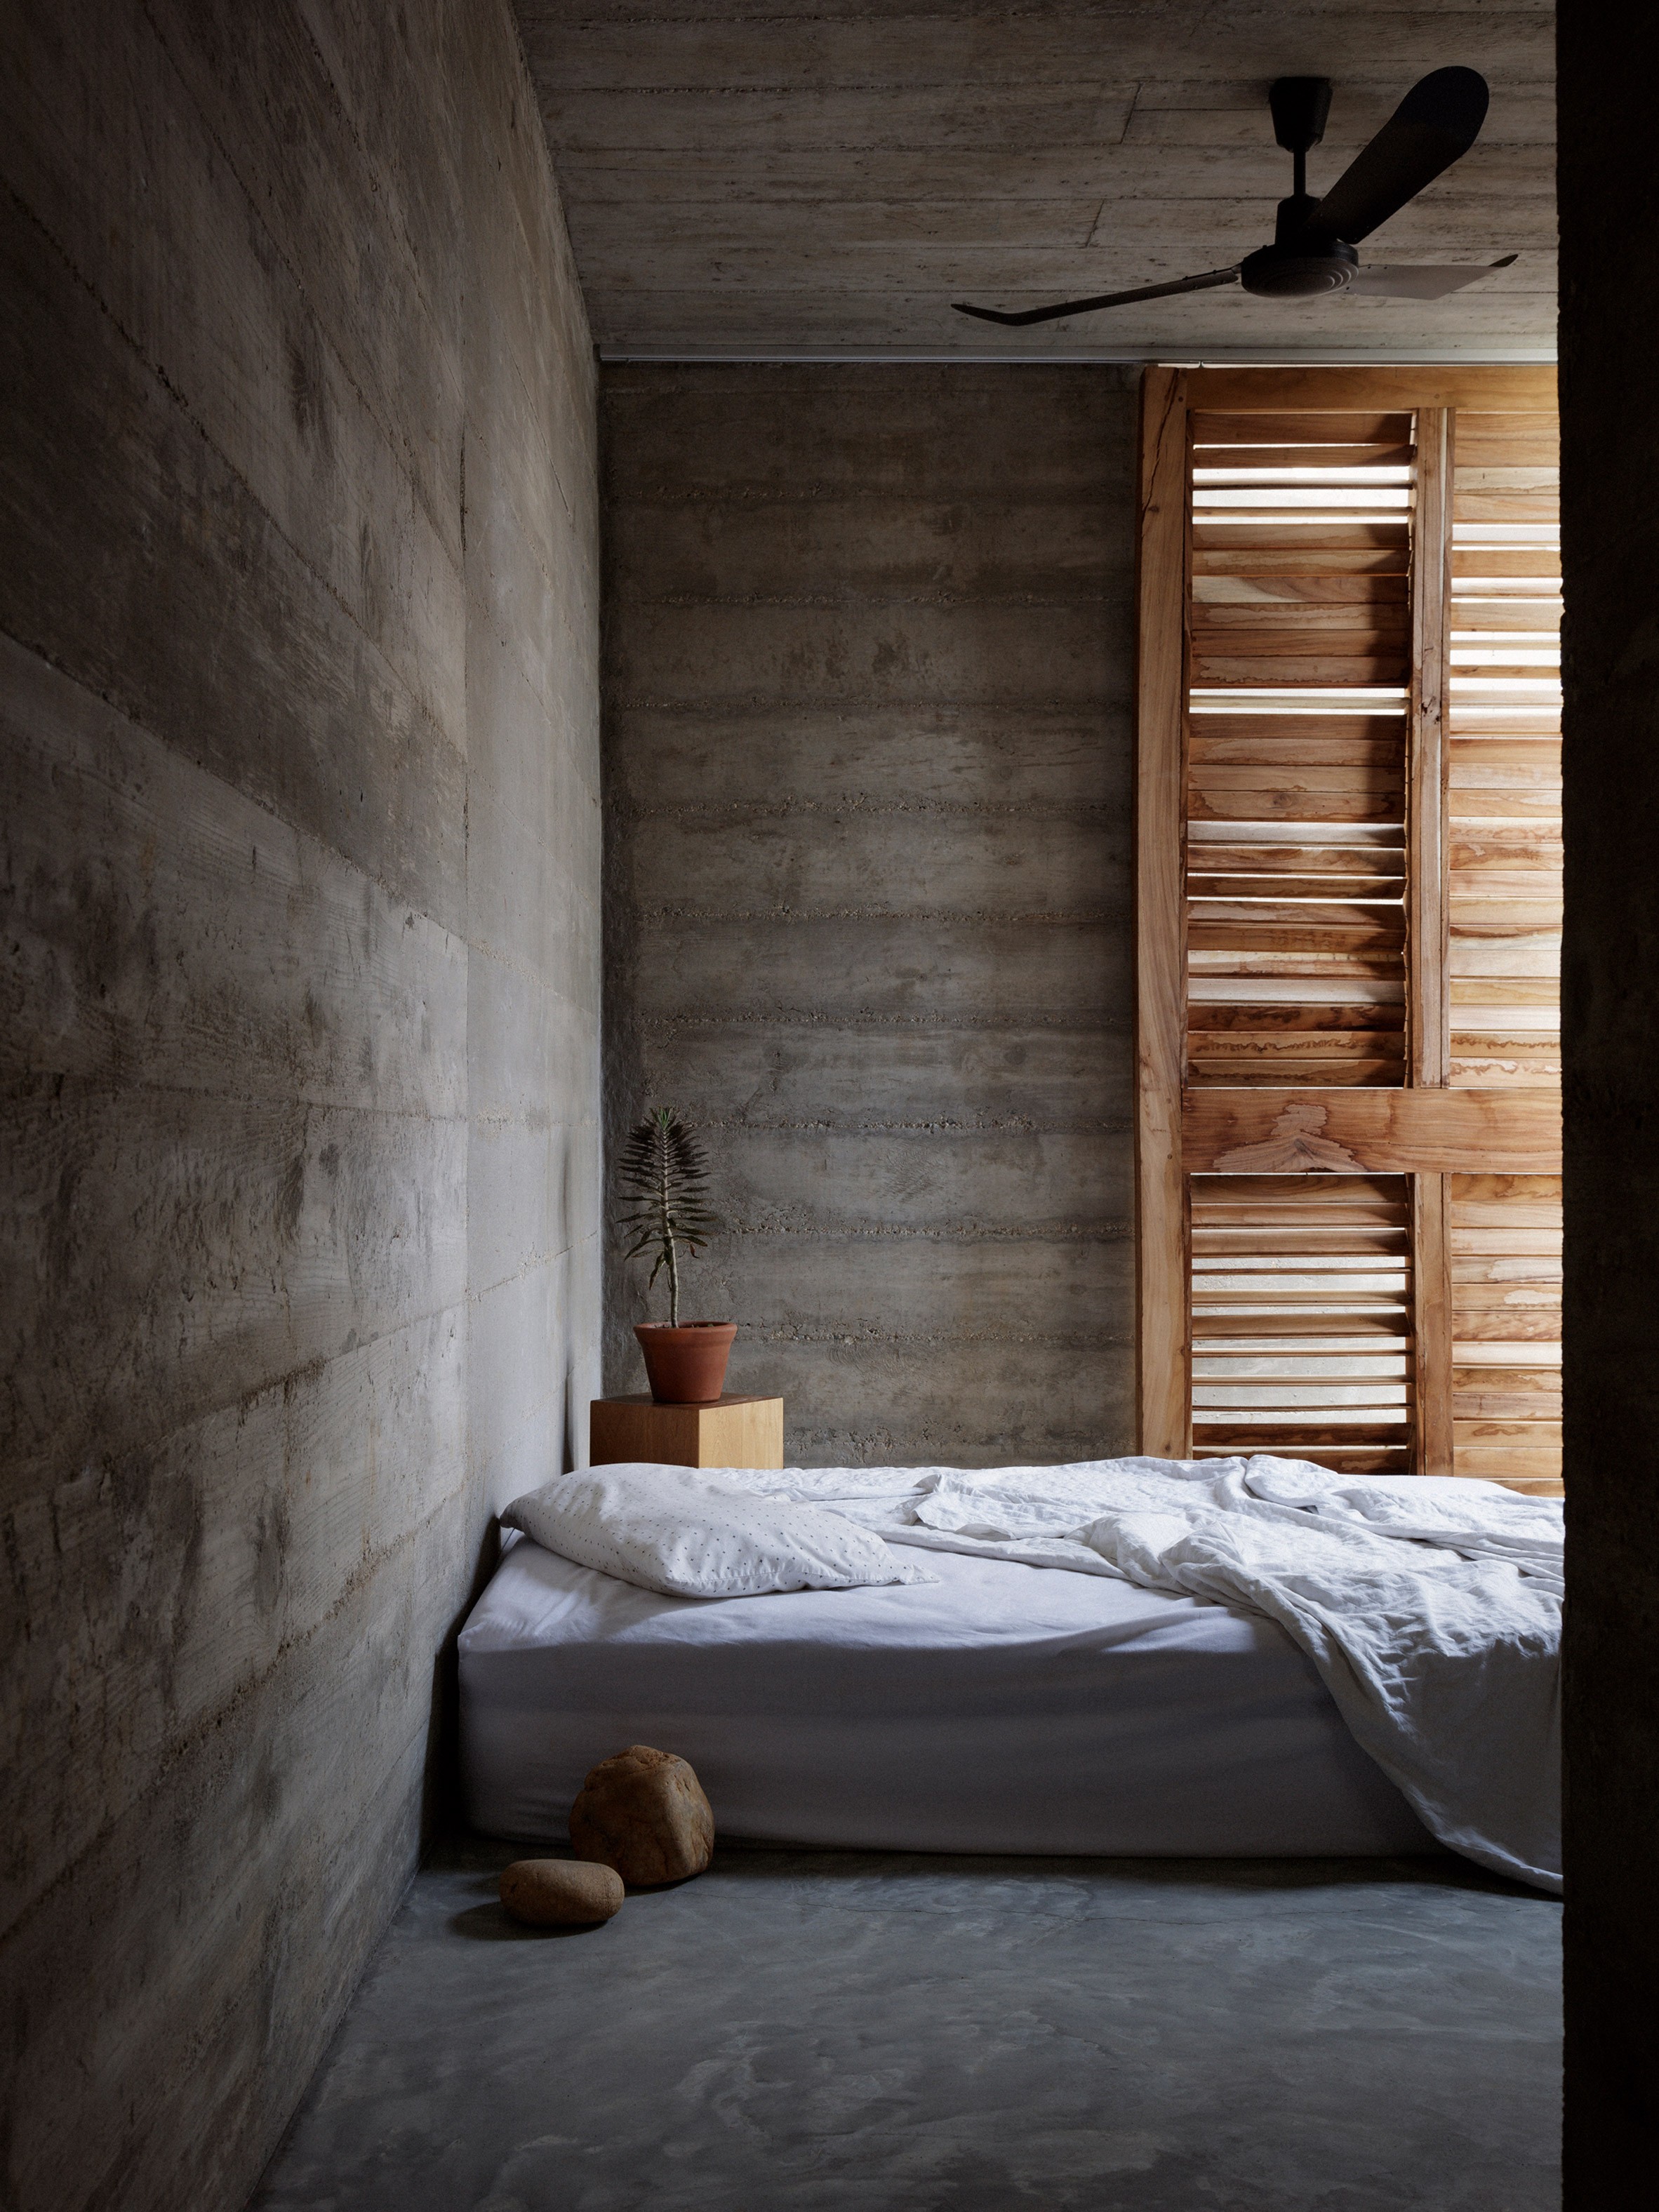 Décor do dia: quarto com decoração minimalista e cama baixa (Foto: Divulgação)